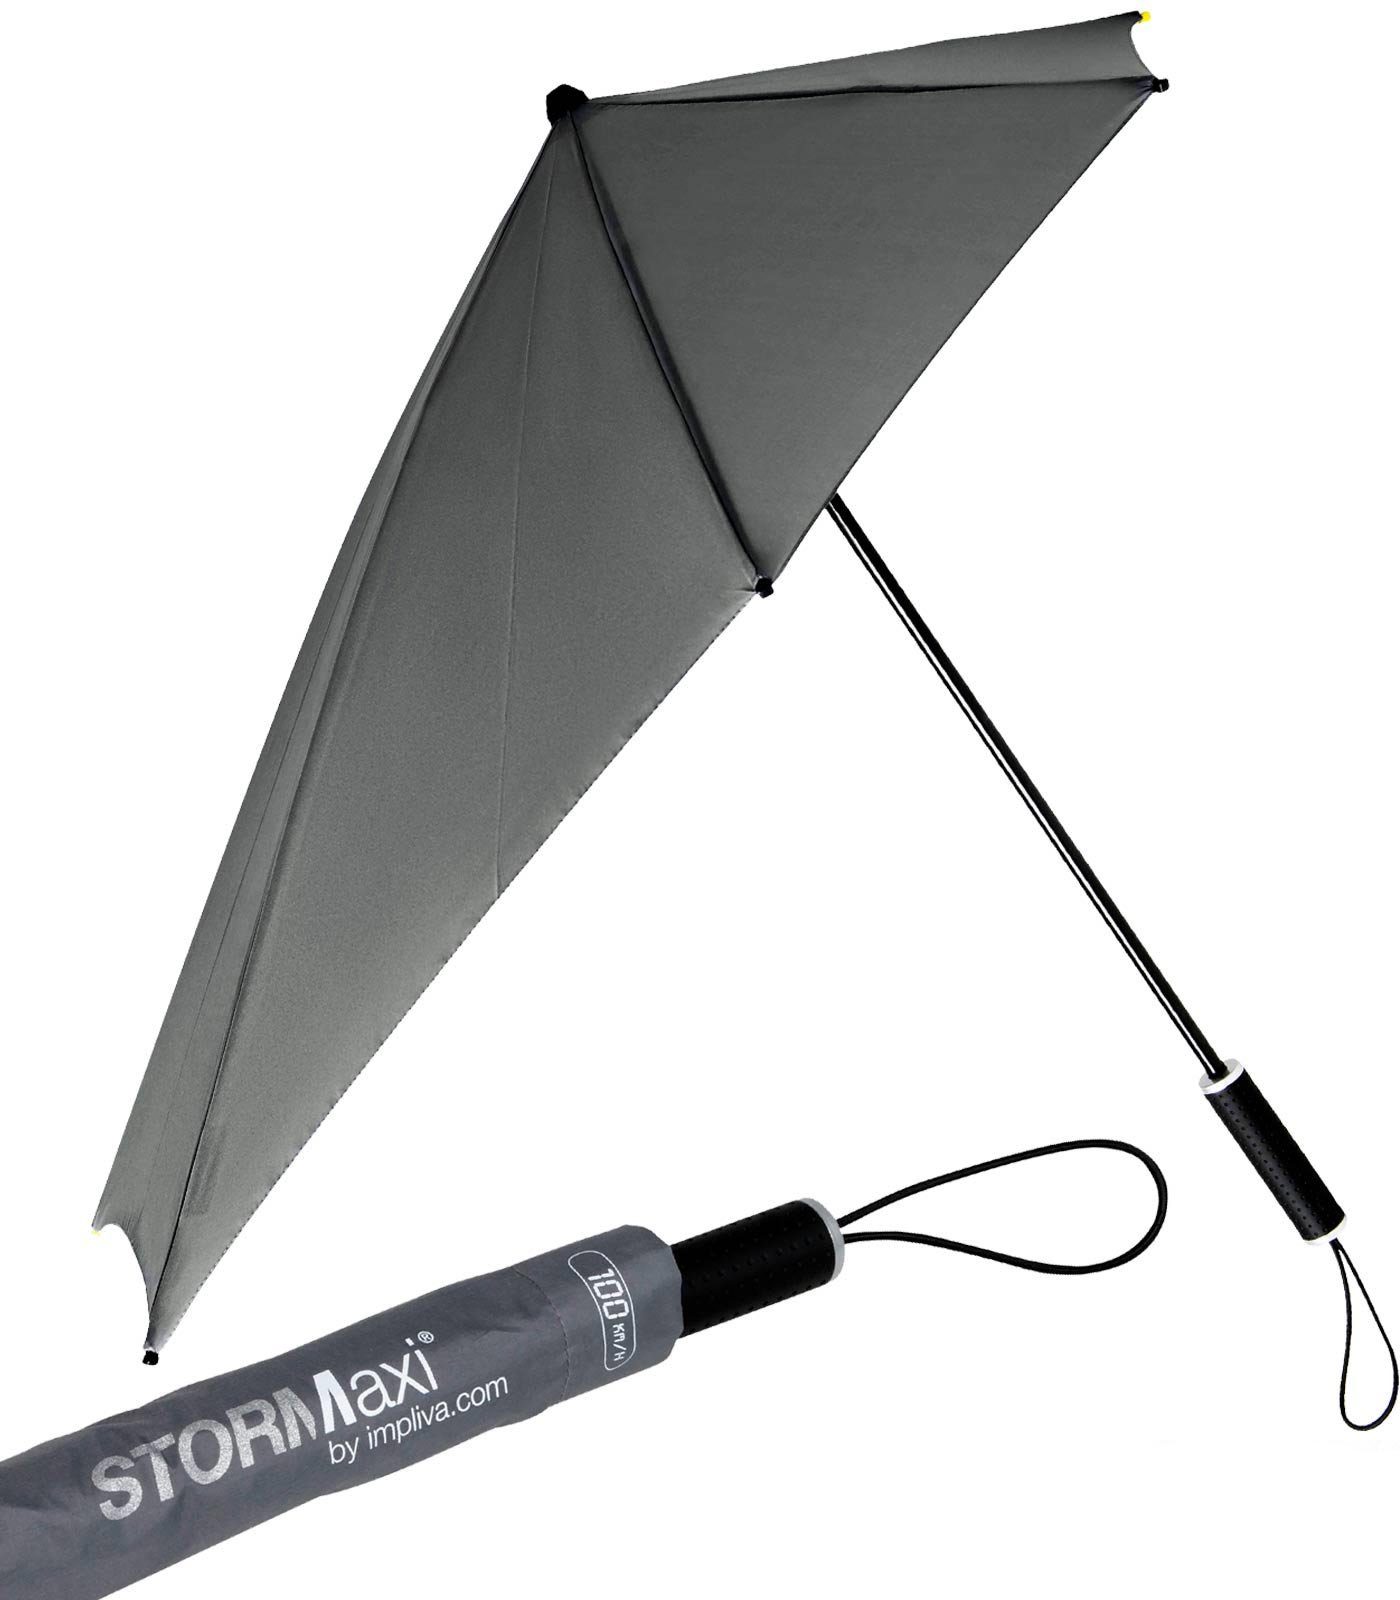 Impliva Stockregenschirm STORMaxi Sturmschirm aerodynamischer Regenschirm, durch seine besondere Form dreht sich der Schirm in den Wind, hält bis zu 100 km/h aus grau